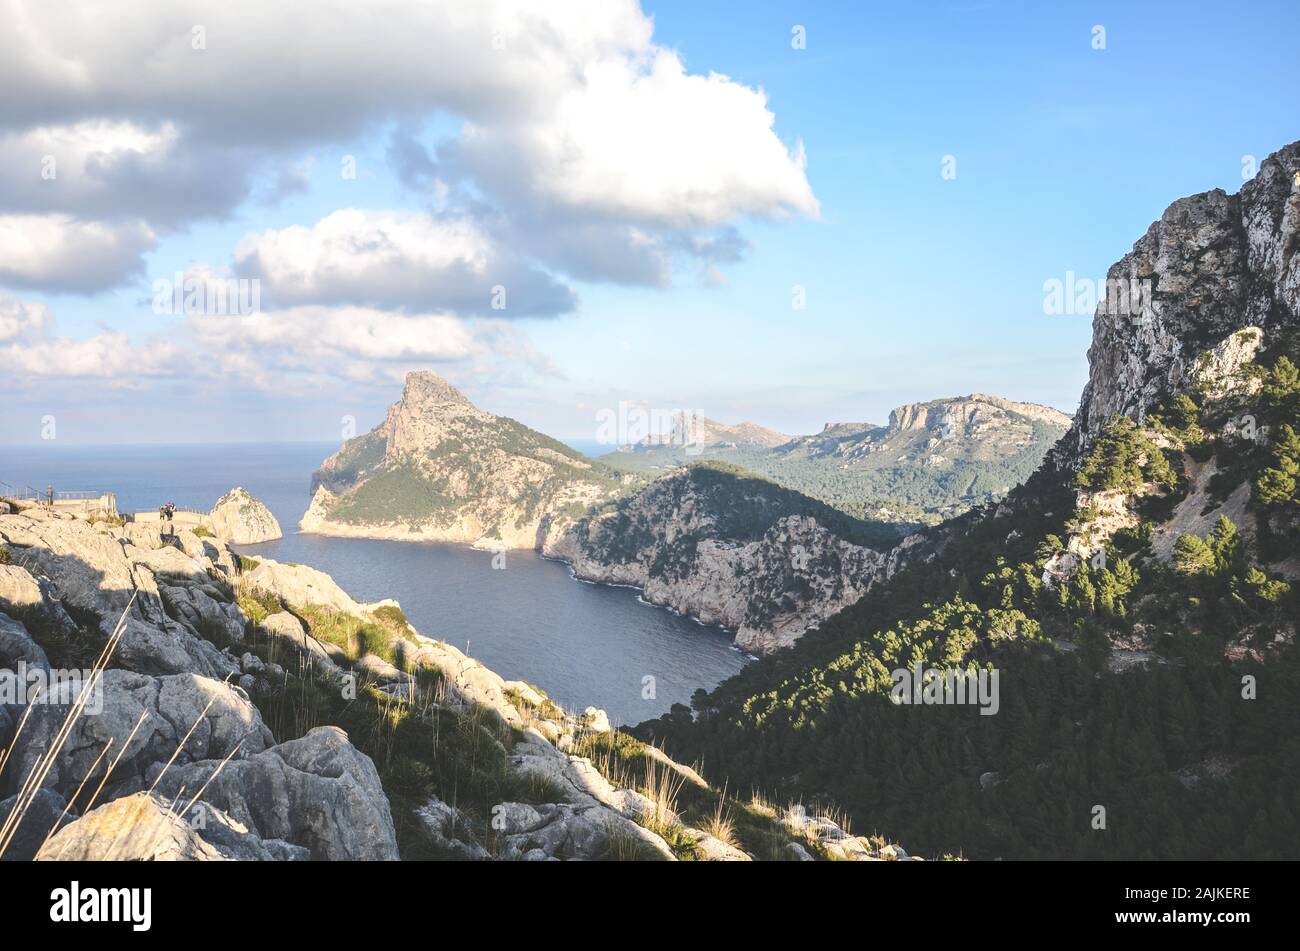 Unglaubliche Aussicht vom Mirador Es Colomer in Cap de Formentor, Mallorca, Balearen, Spanien. Felsformationen im Mittelmeer. Felsen am Meer. Spanische touristische Attraktion und beliebter Aussichtspunkt. Stockfoto